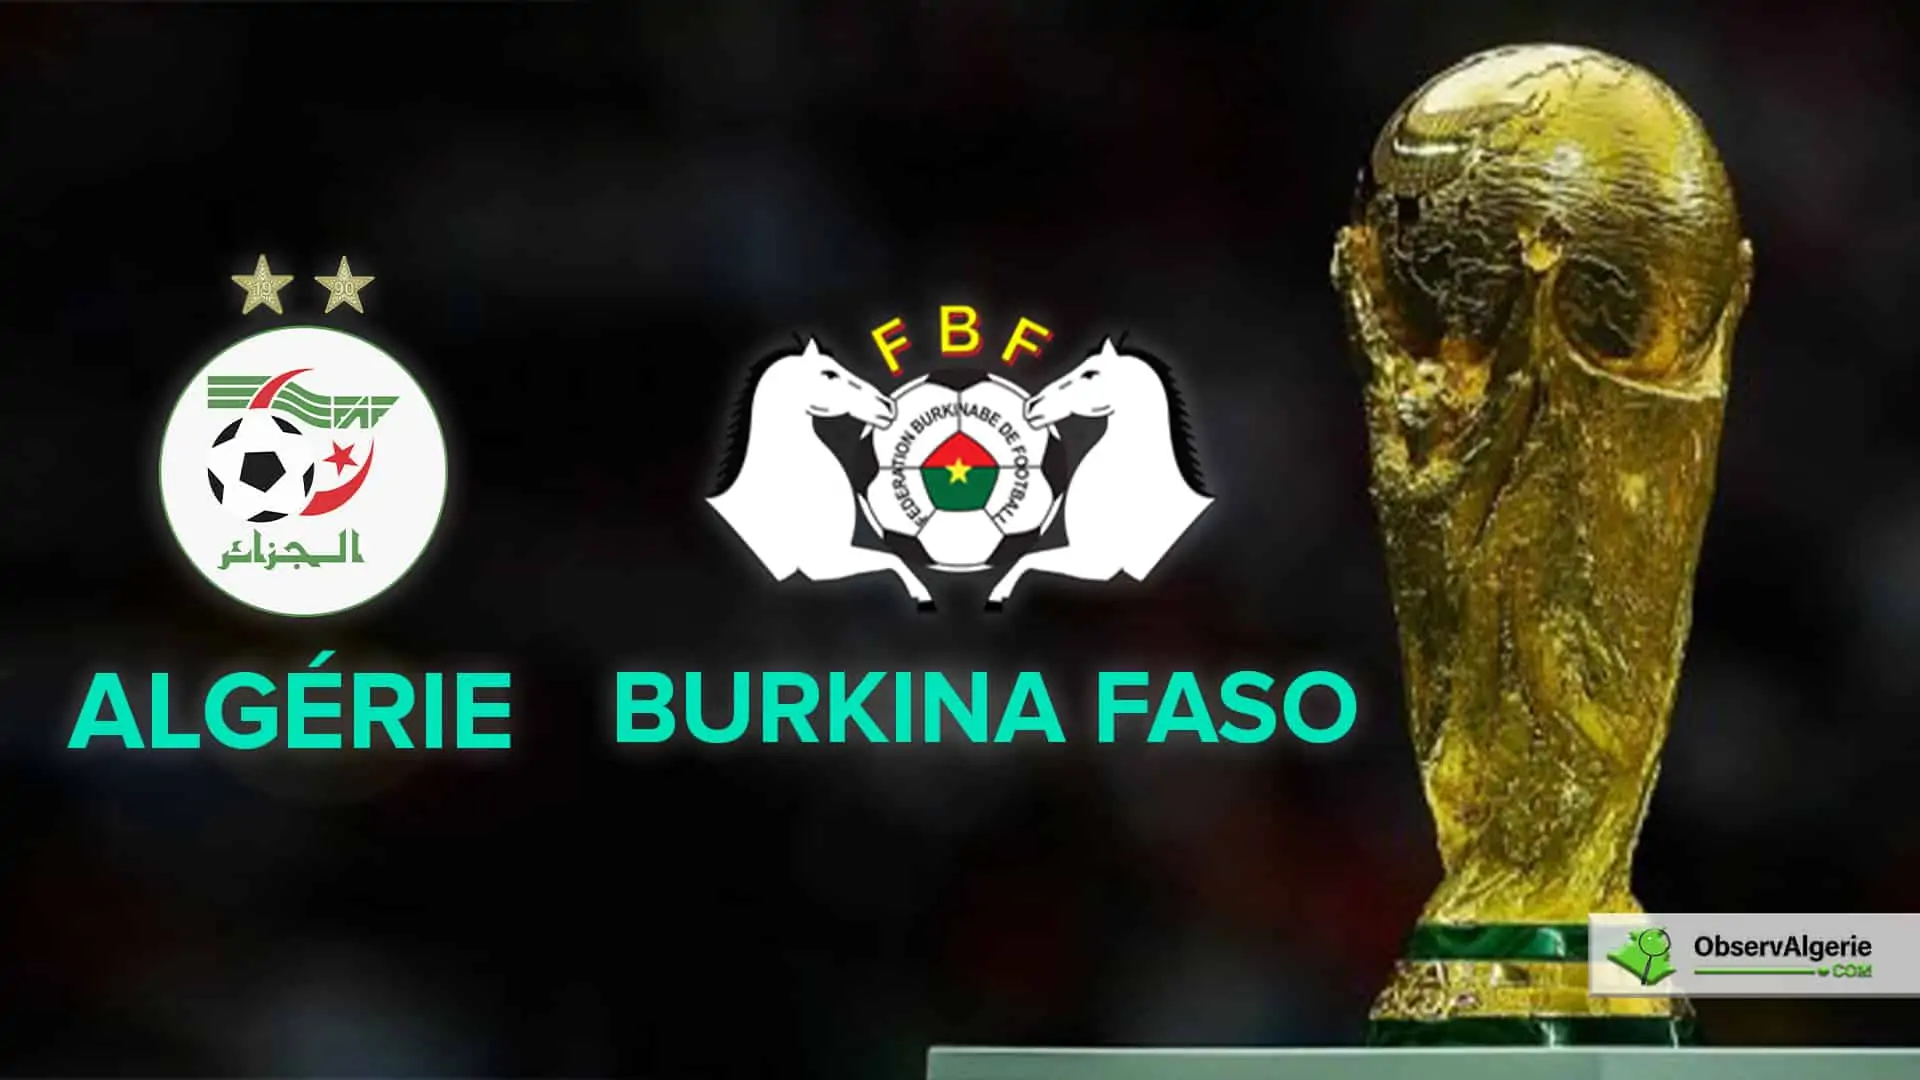 Burkina Faso - Algérie